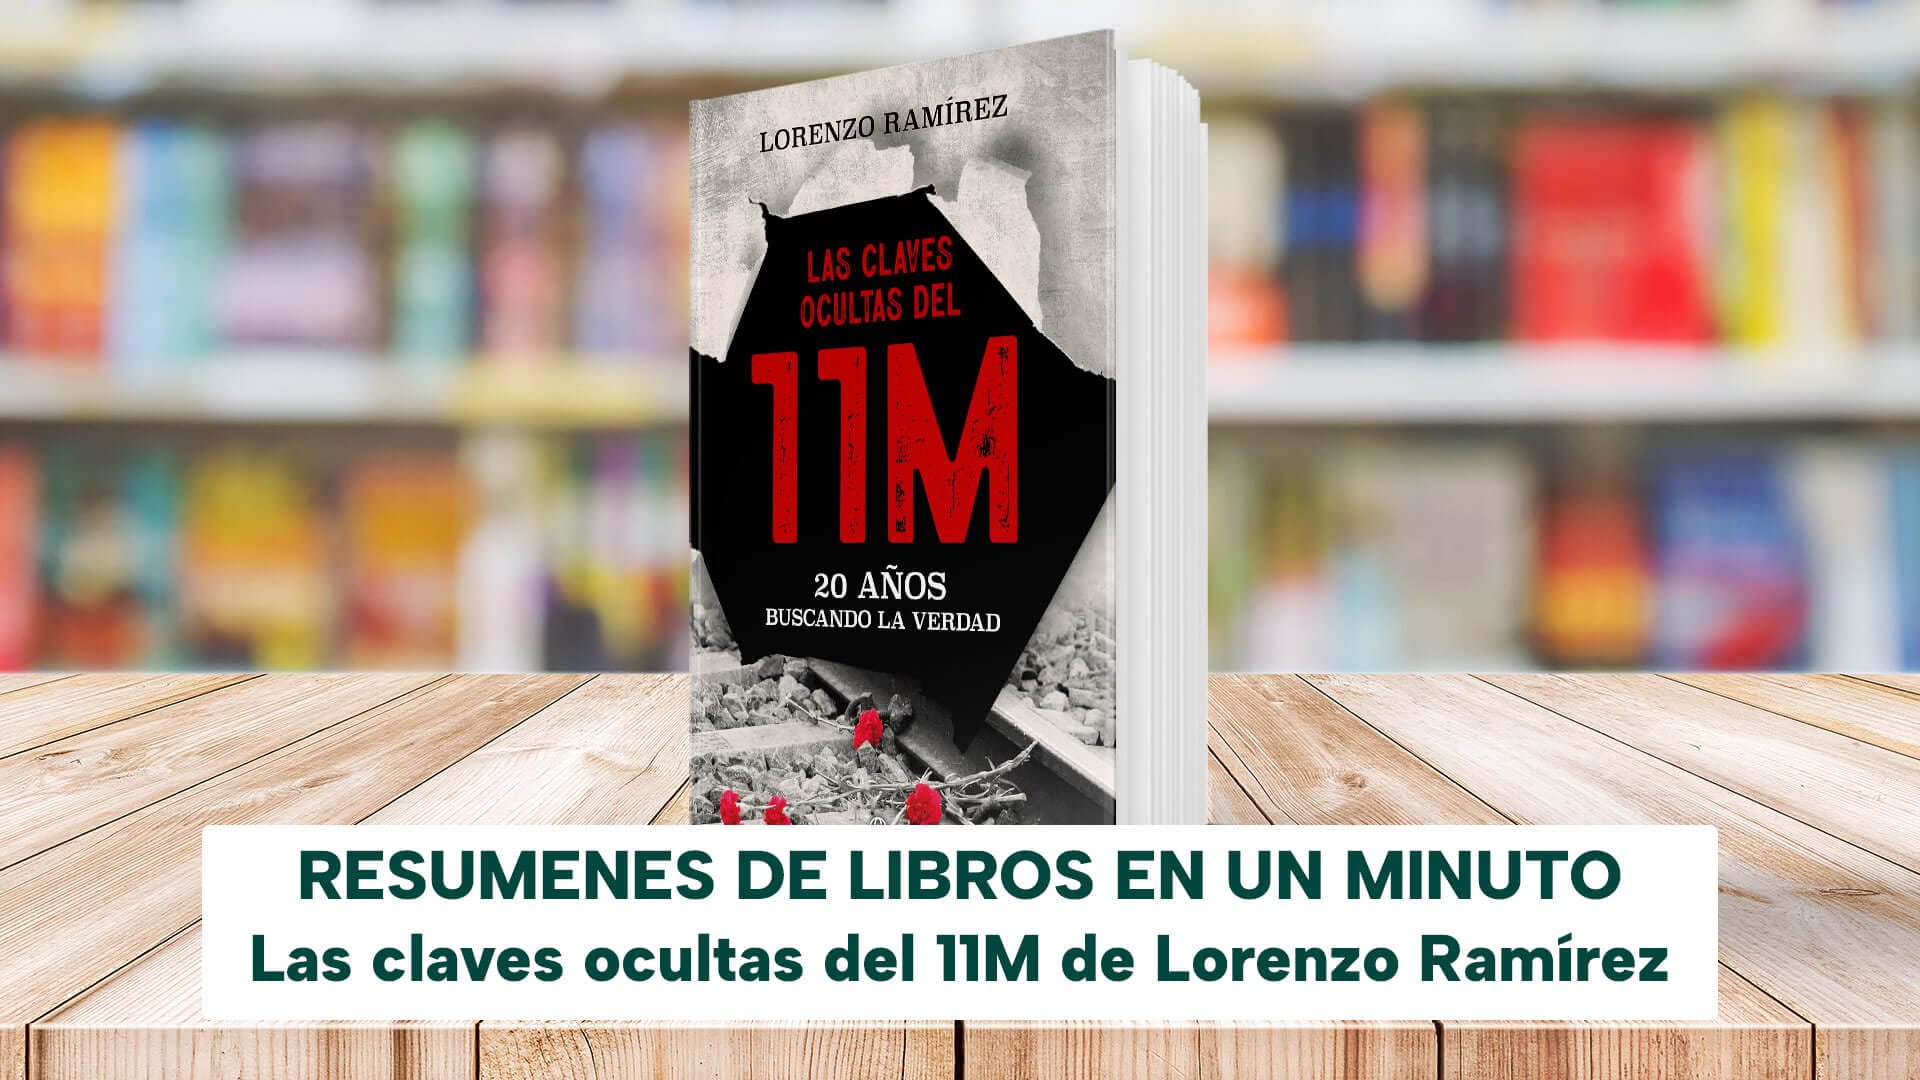 Lorenzo Ramírez on X: Llegó el día. Mañana 7 de febrero mi libro Las  claves ocultas del 11M estará disponible en las librerías españolas.  Gracias a los amigos de @esferalibros por la